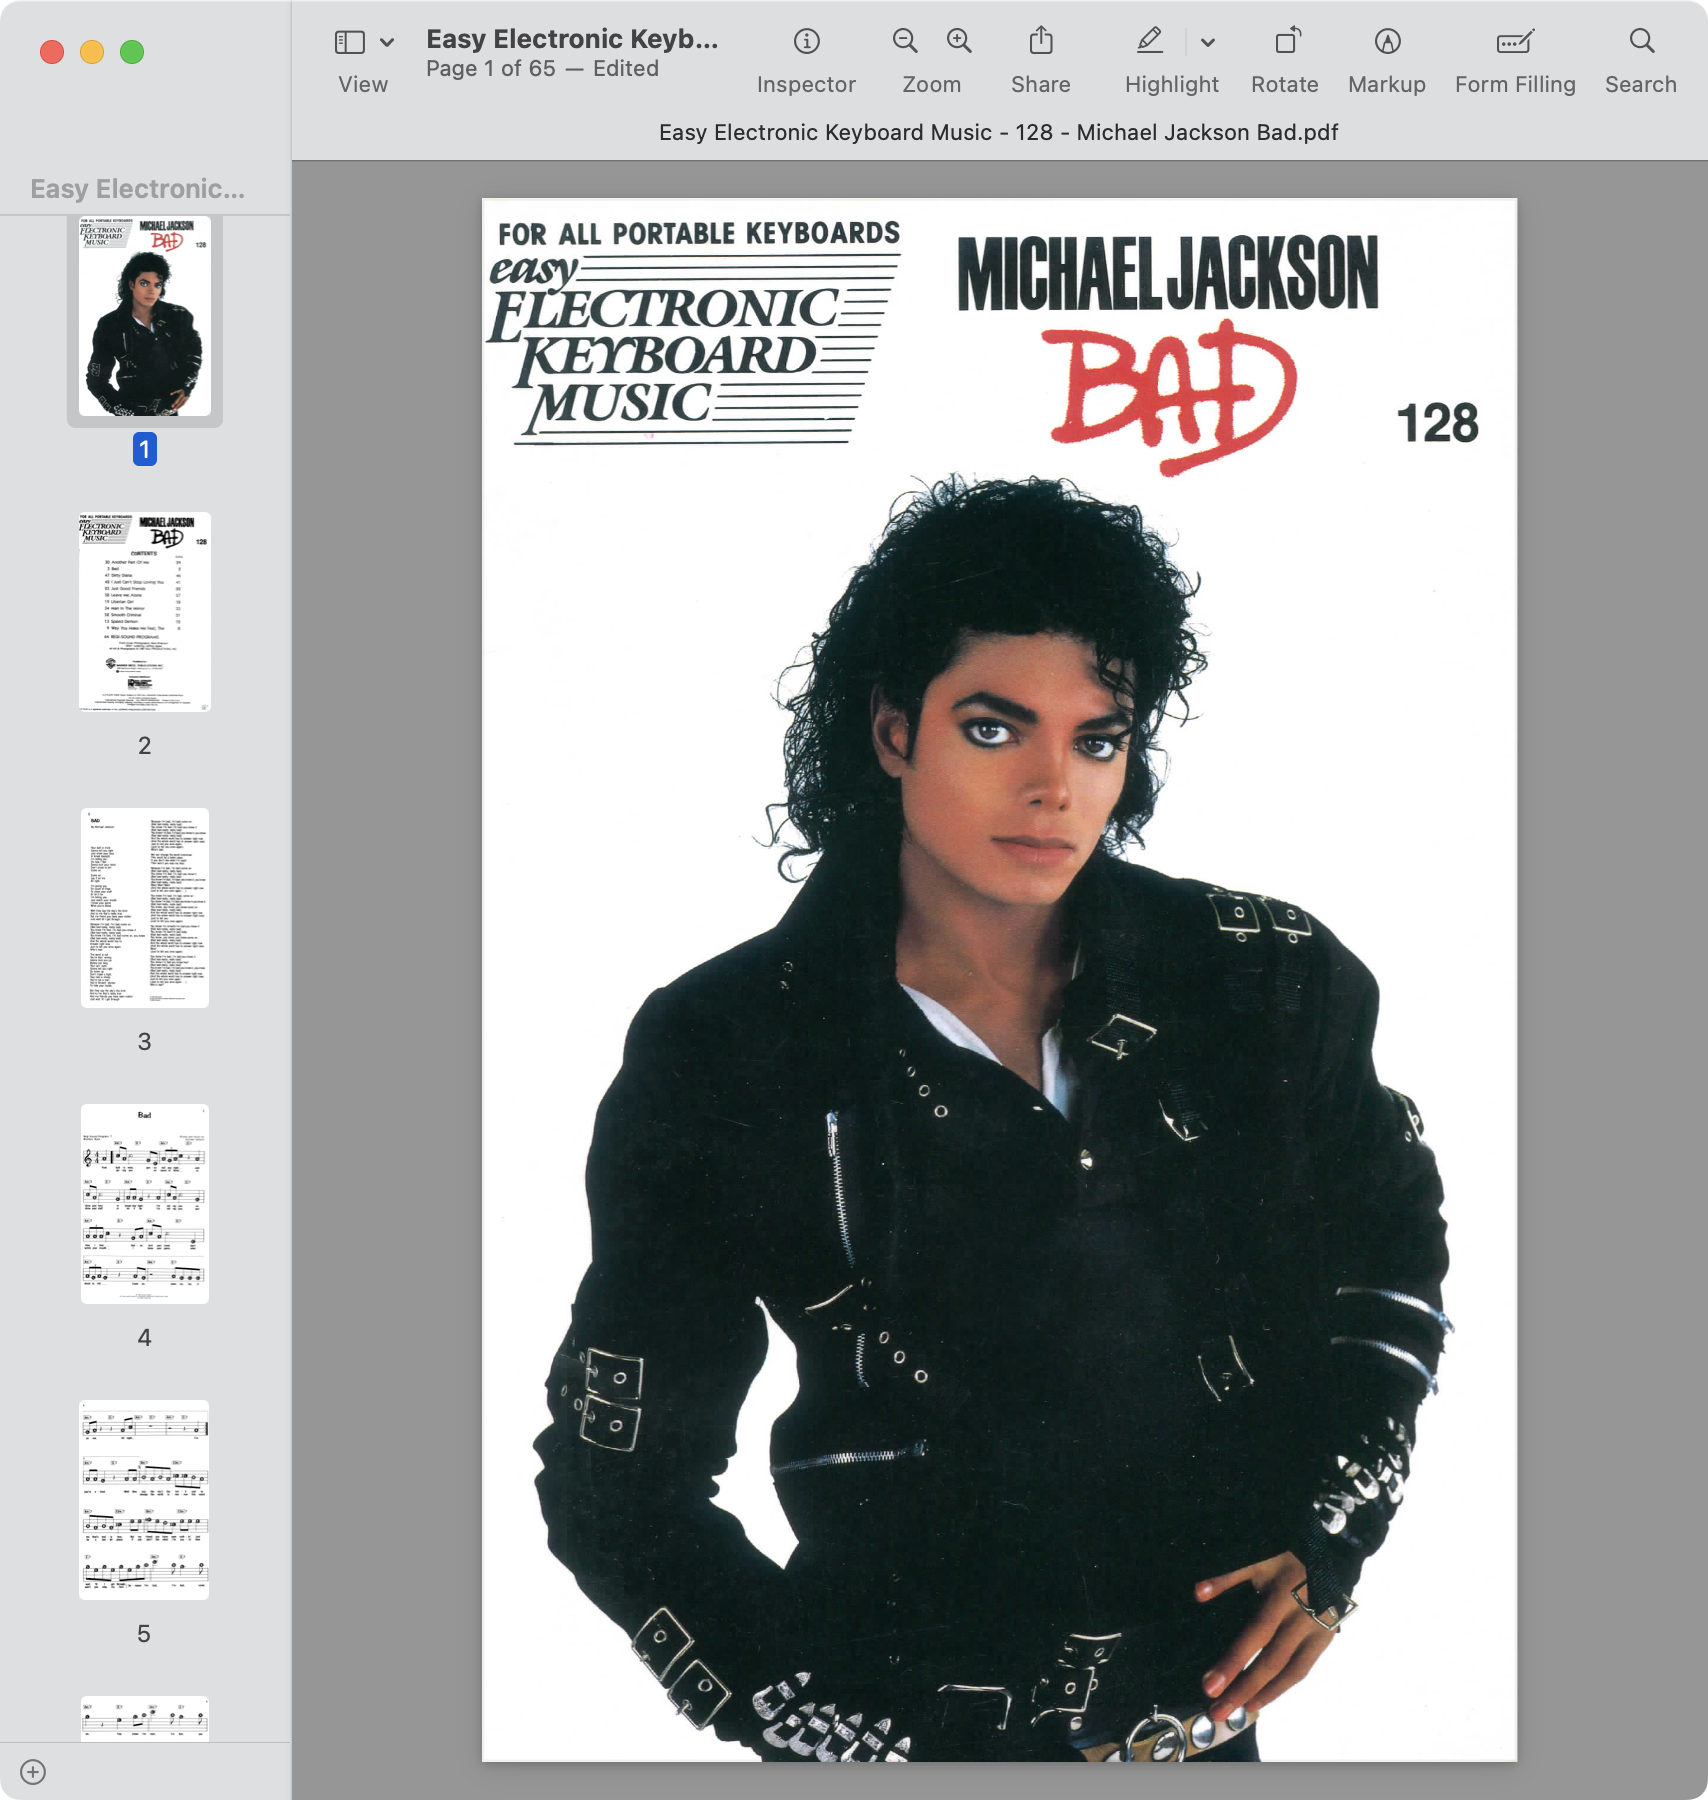 Easy Electronic Keyboard Music - 128 - Michael Jackson Bad.jpg